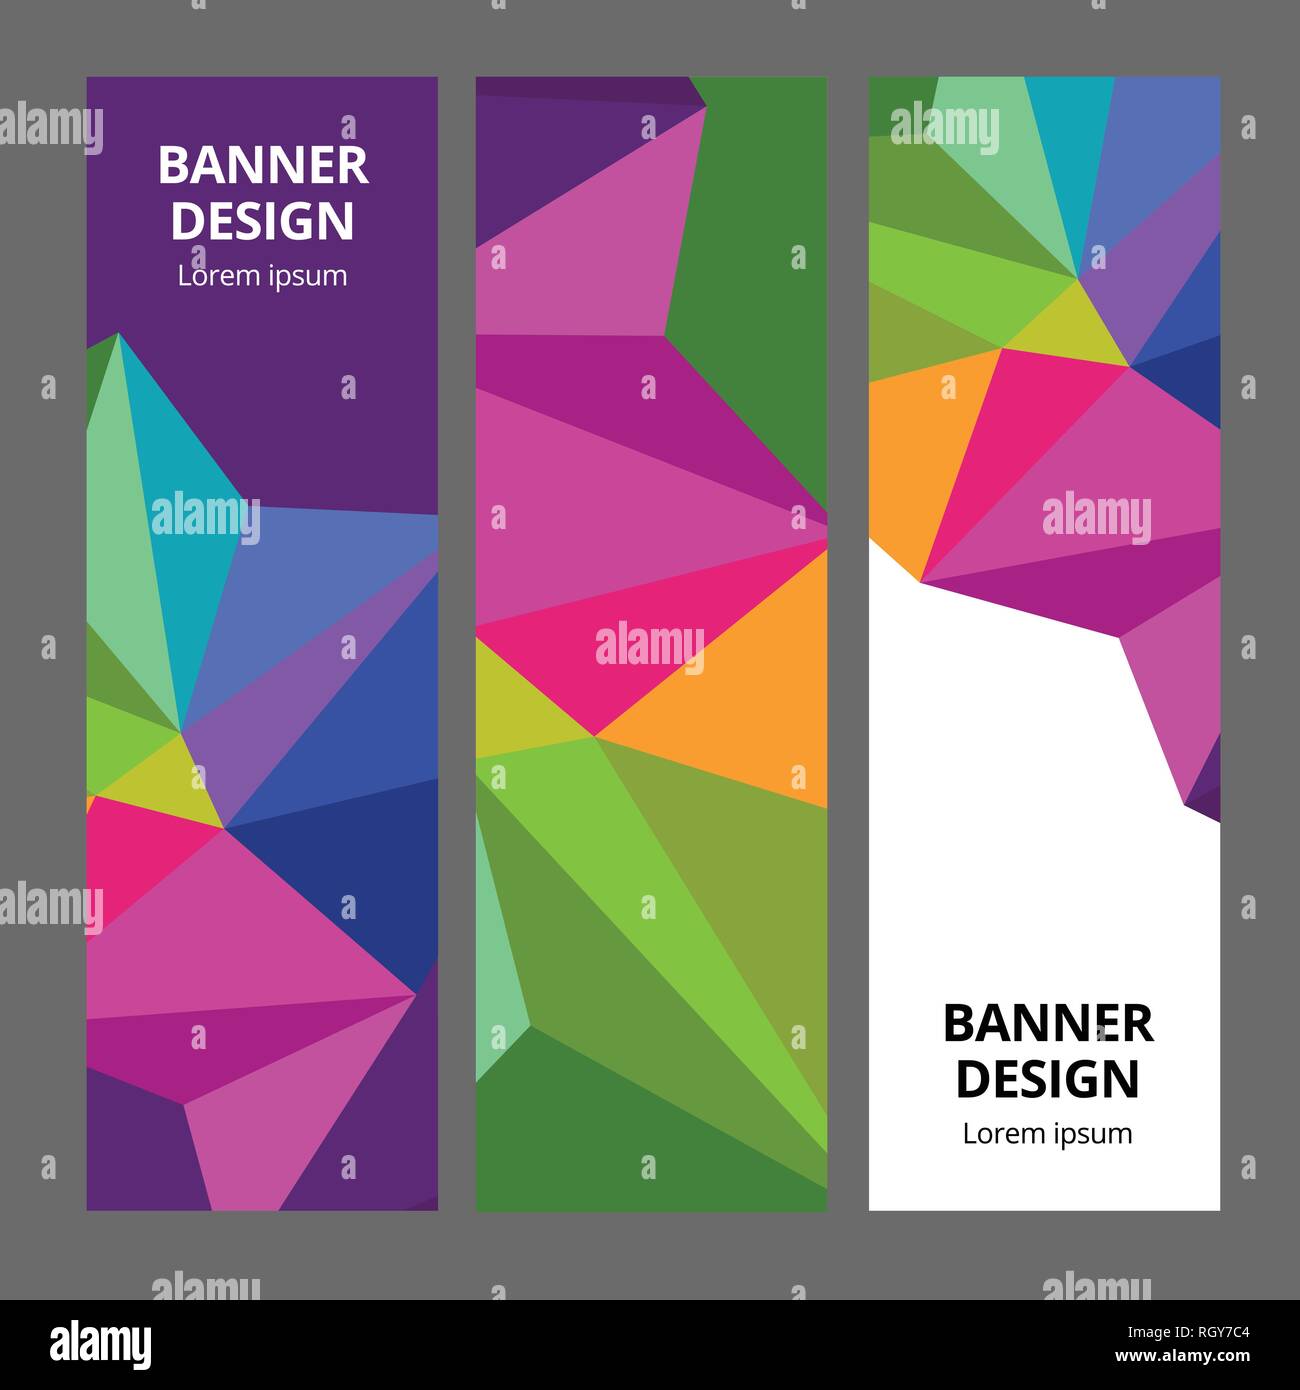 Download 400 Background Banner Design Vector Gratis Terbaik